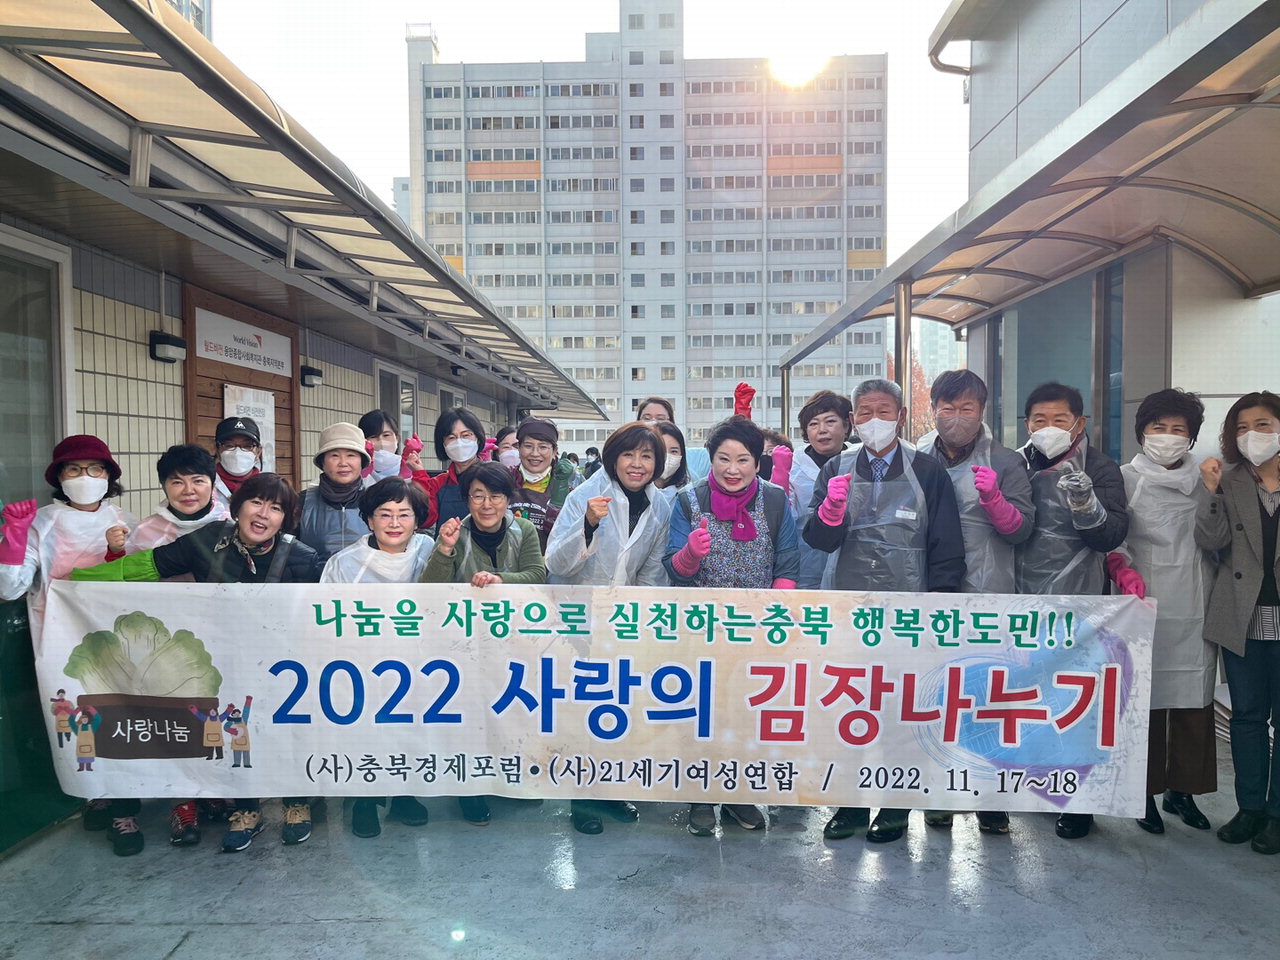 (사)충북경제포럼(차태환 회장)과 (사)21세기여성연합회(유현순 회장)이 '2022 사랑의 김장나누기' 봉사를 펼쳤다.